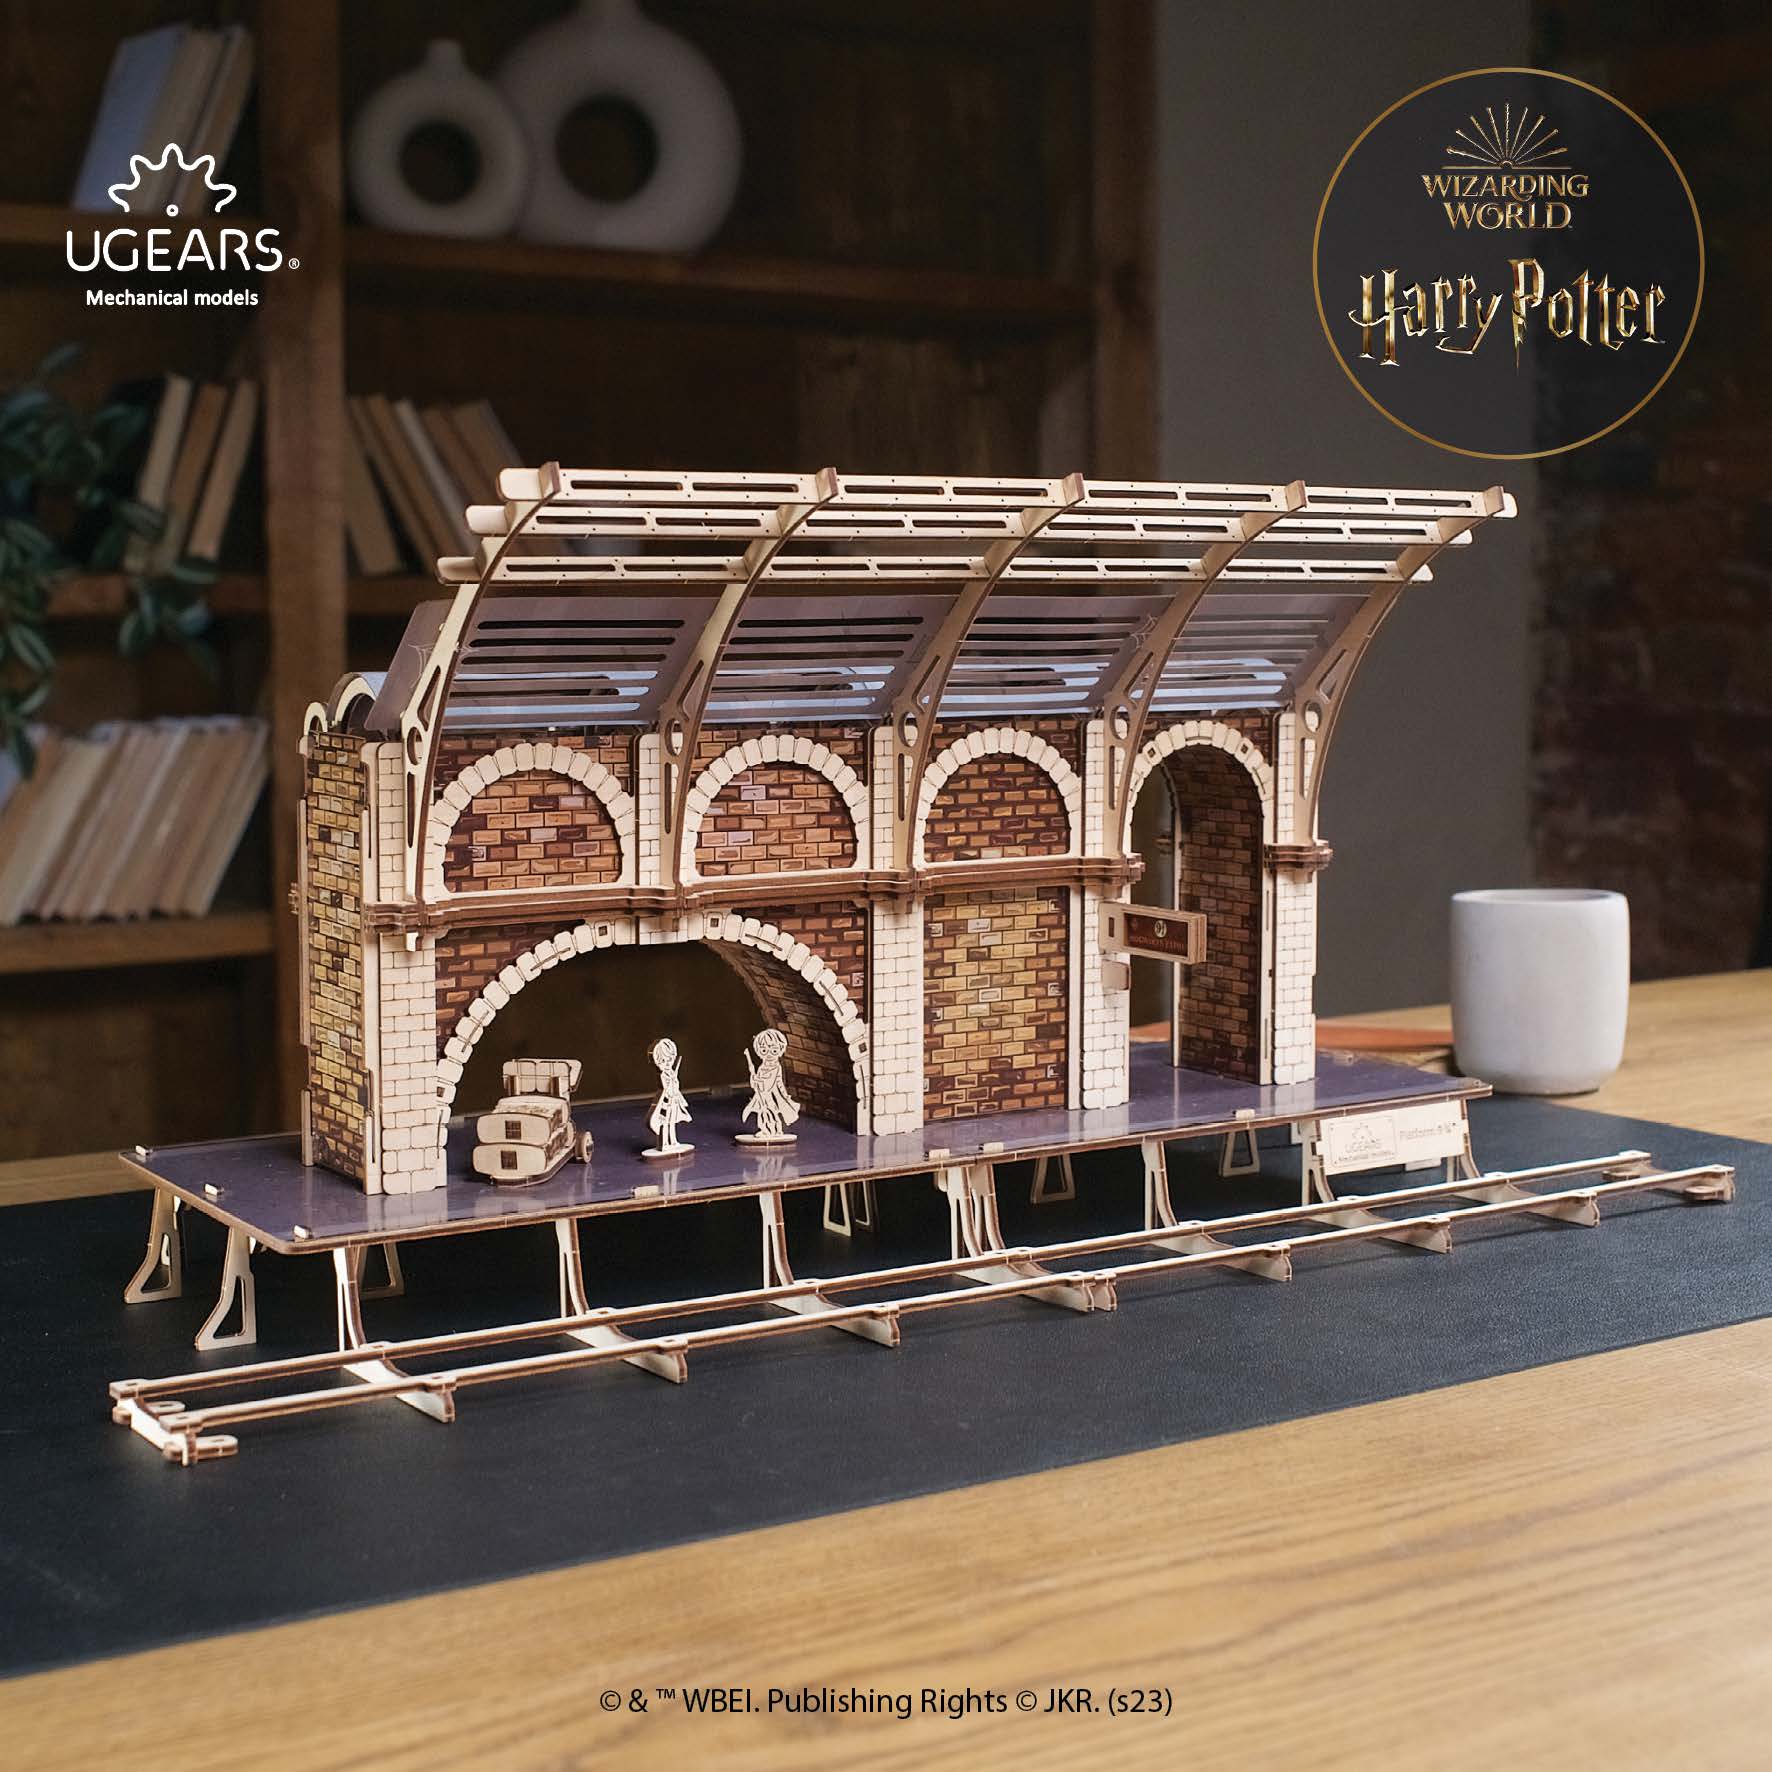 Maquette Calendrier de l’Avent Harry Potter™